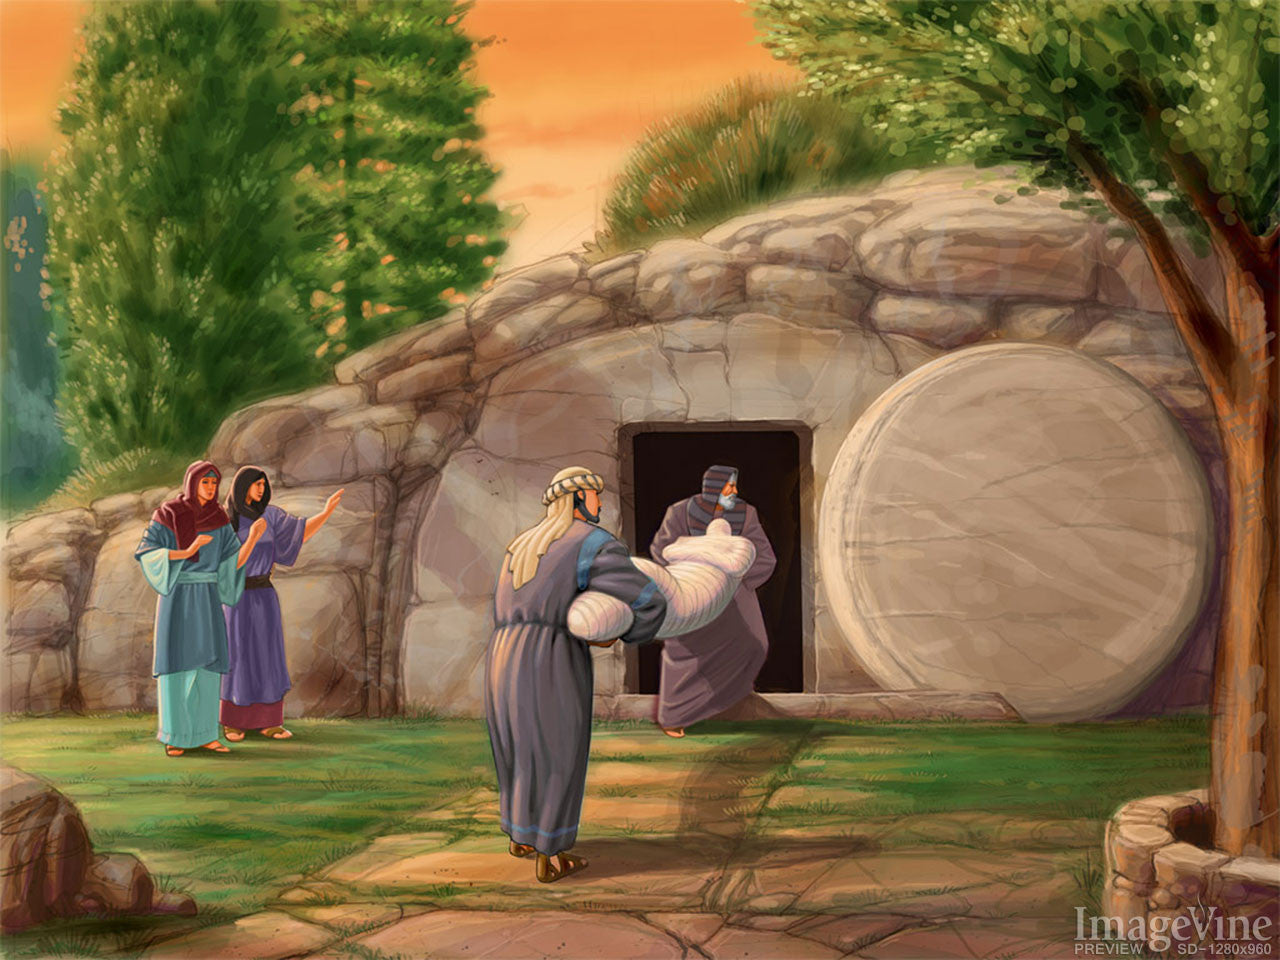 Easter Illustrations Backgrounds – ImageVine